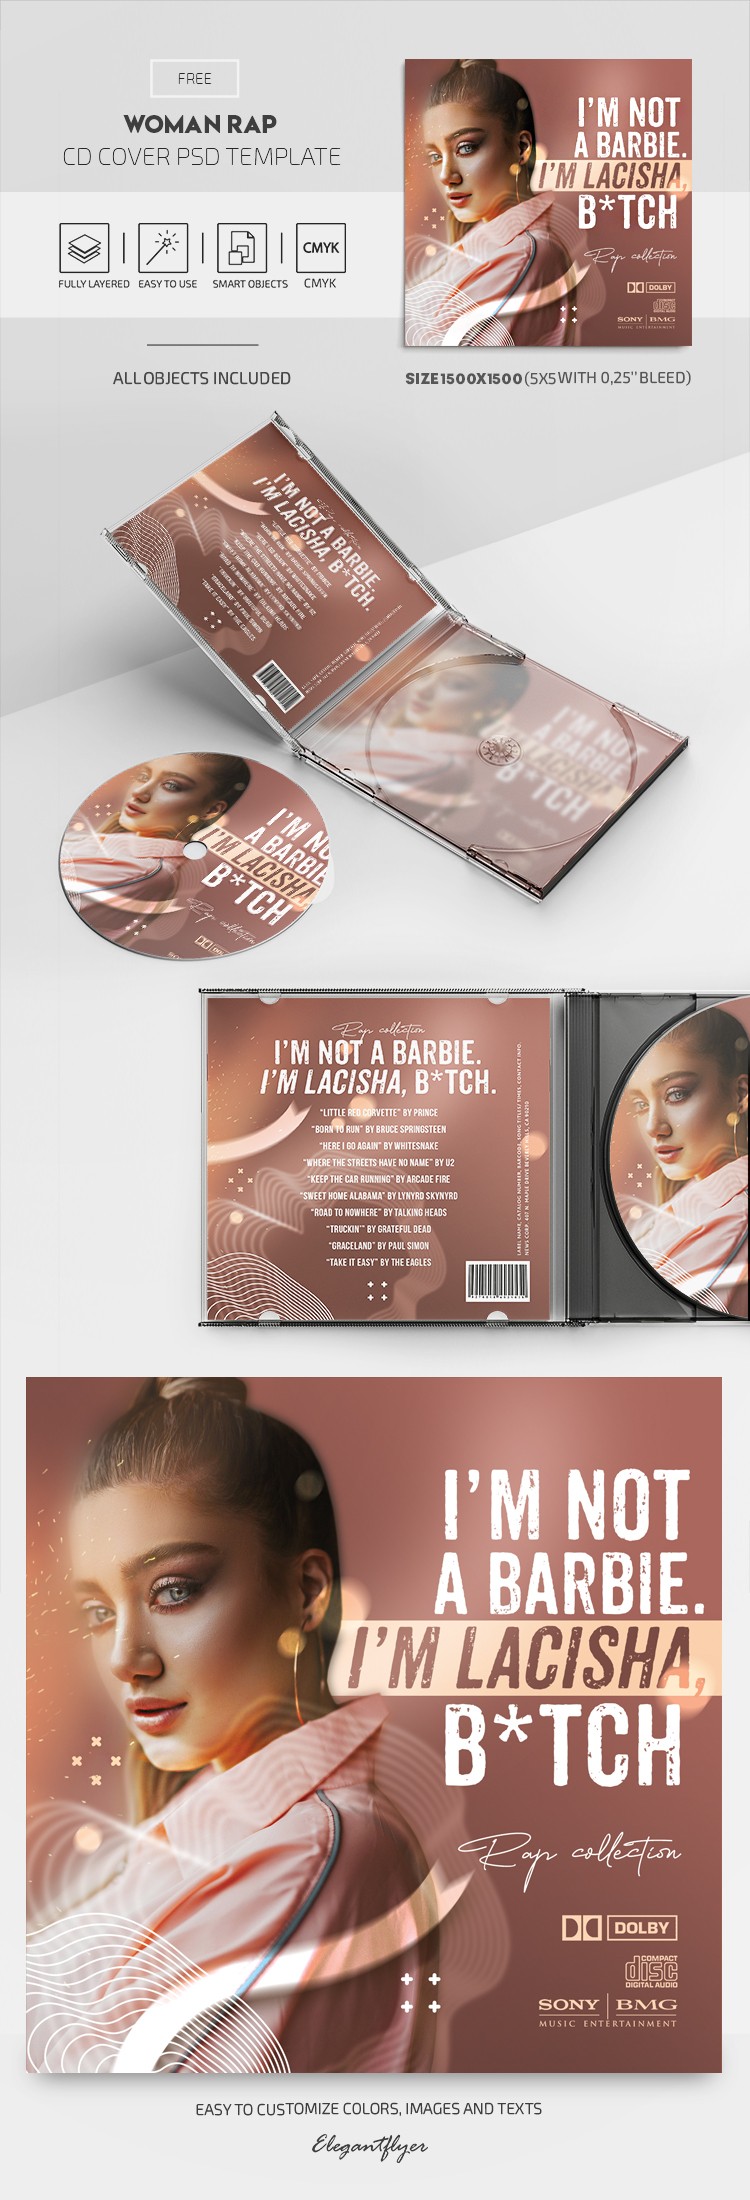 Portada de CD de rap de mujer by ElegantFlyer